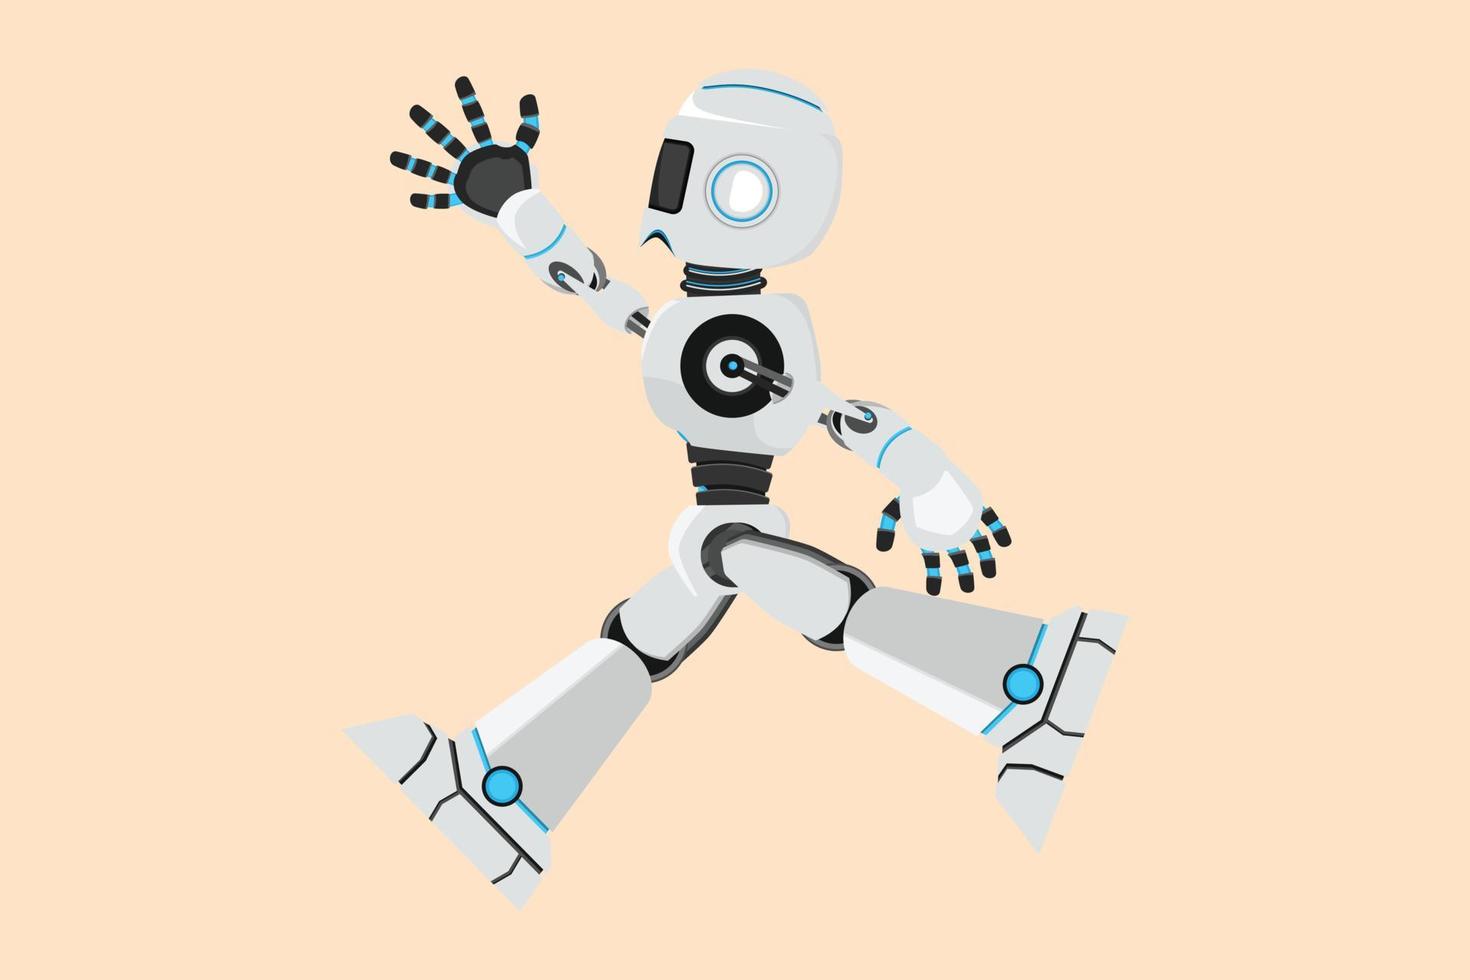 dibujo plano de negocios robot feliz saltando con se extiende ambas piernas y levanta una mano. organismo cibernético humanoide. futuro desarrollo robótico. celebrar el logro. ilustración vectorial de diseño de dibujos animados vector